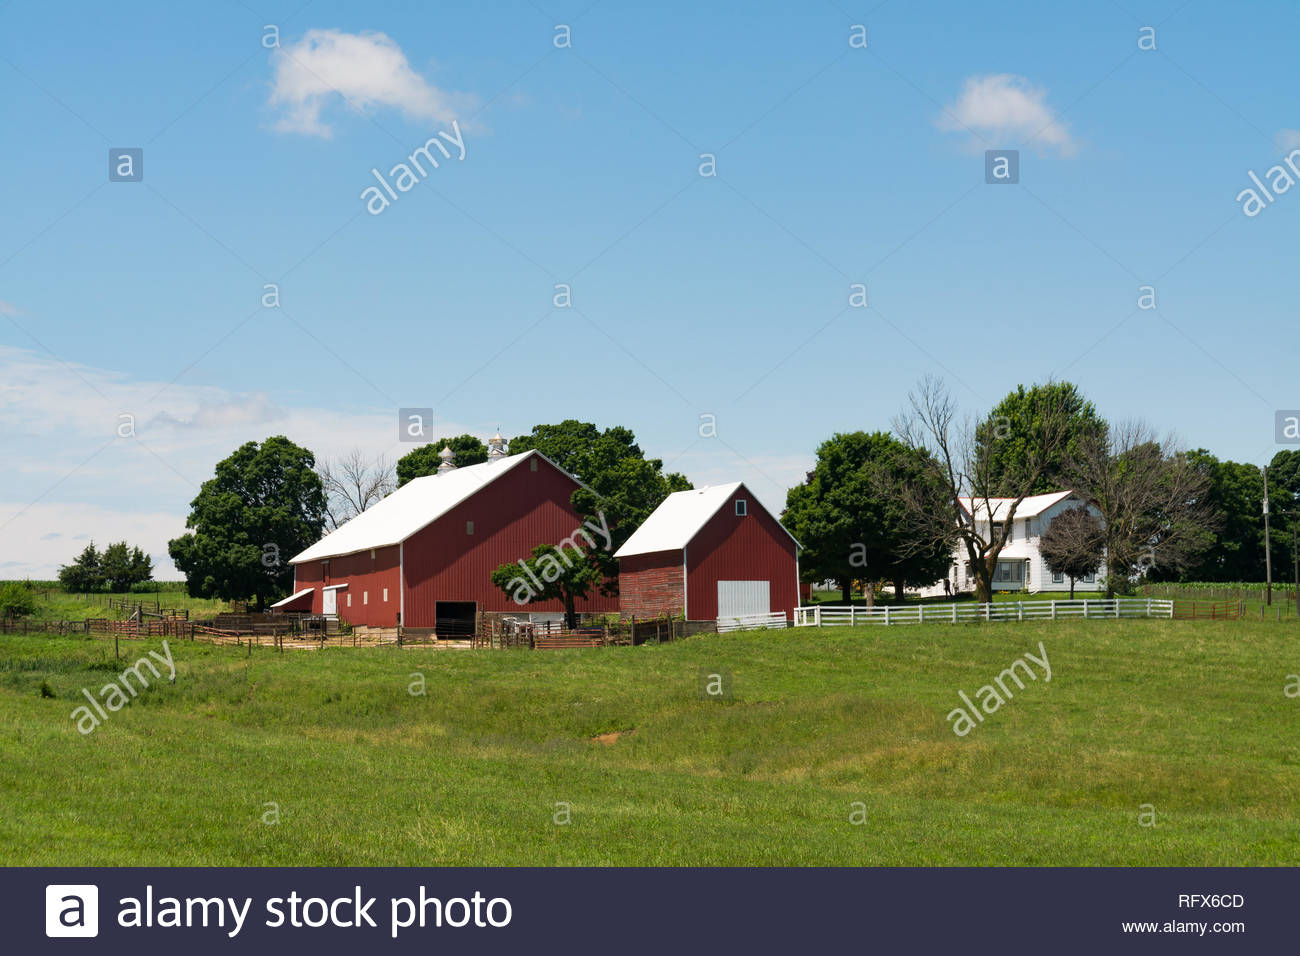 Northern Illinois Landscape Stock Photos